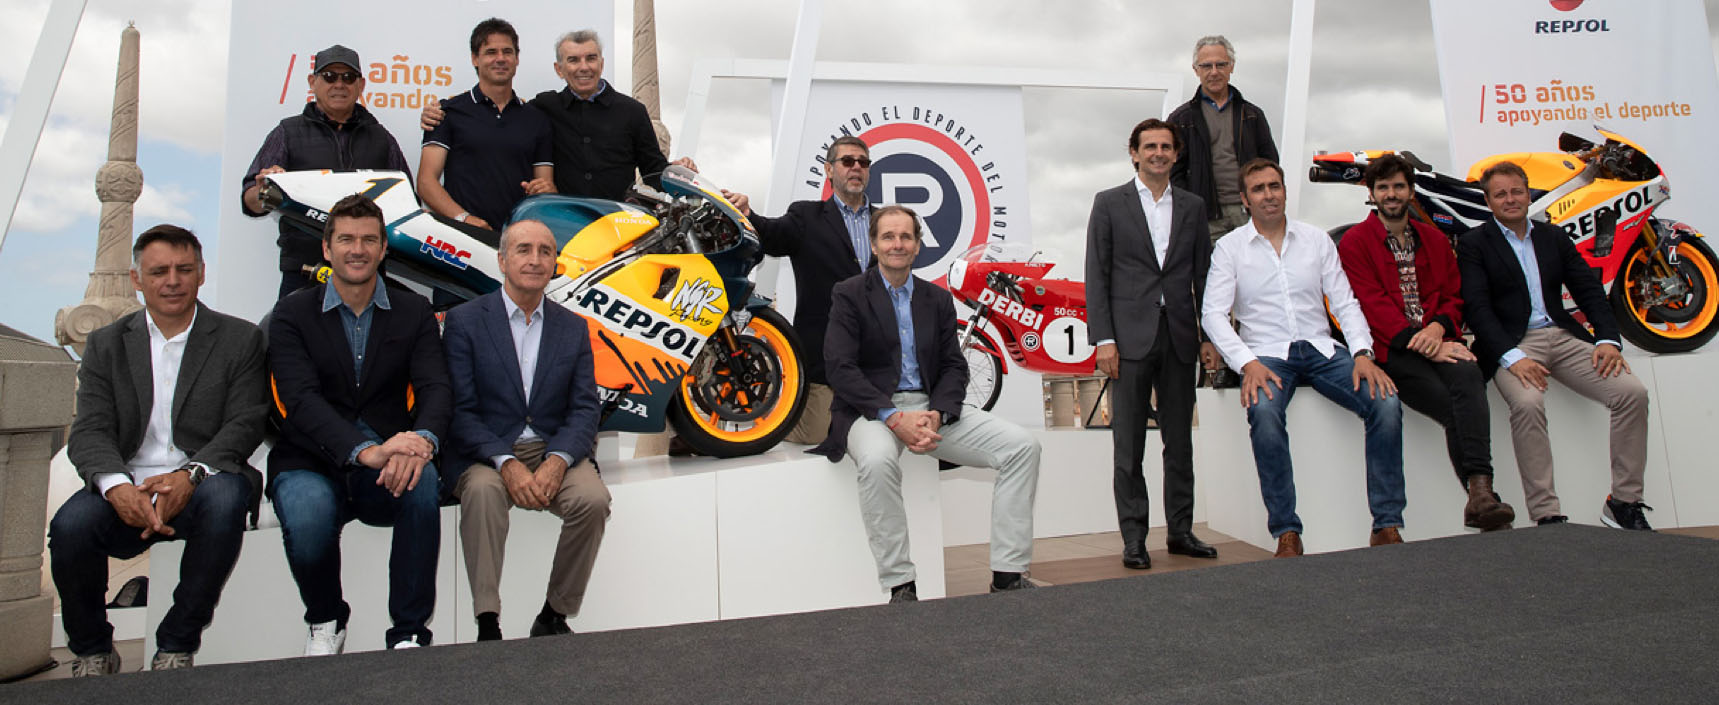 Exposición inédita en Barcelona con 21 coches y motos de los 50 años de Repsol en las competiciones de motor